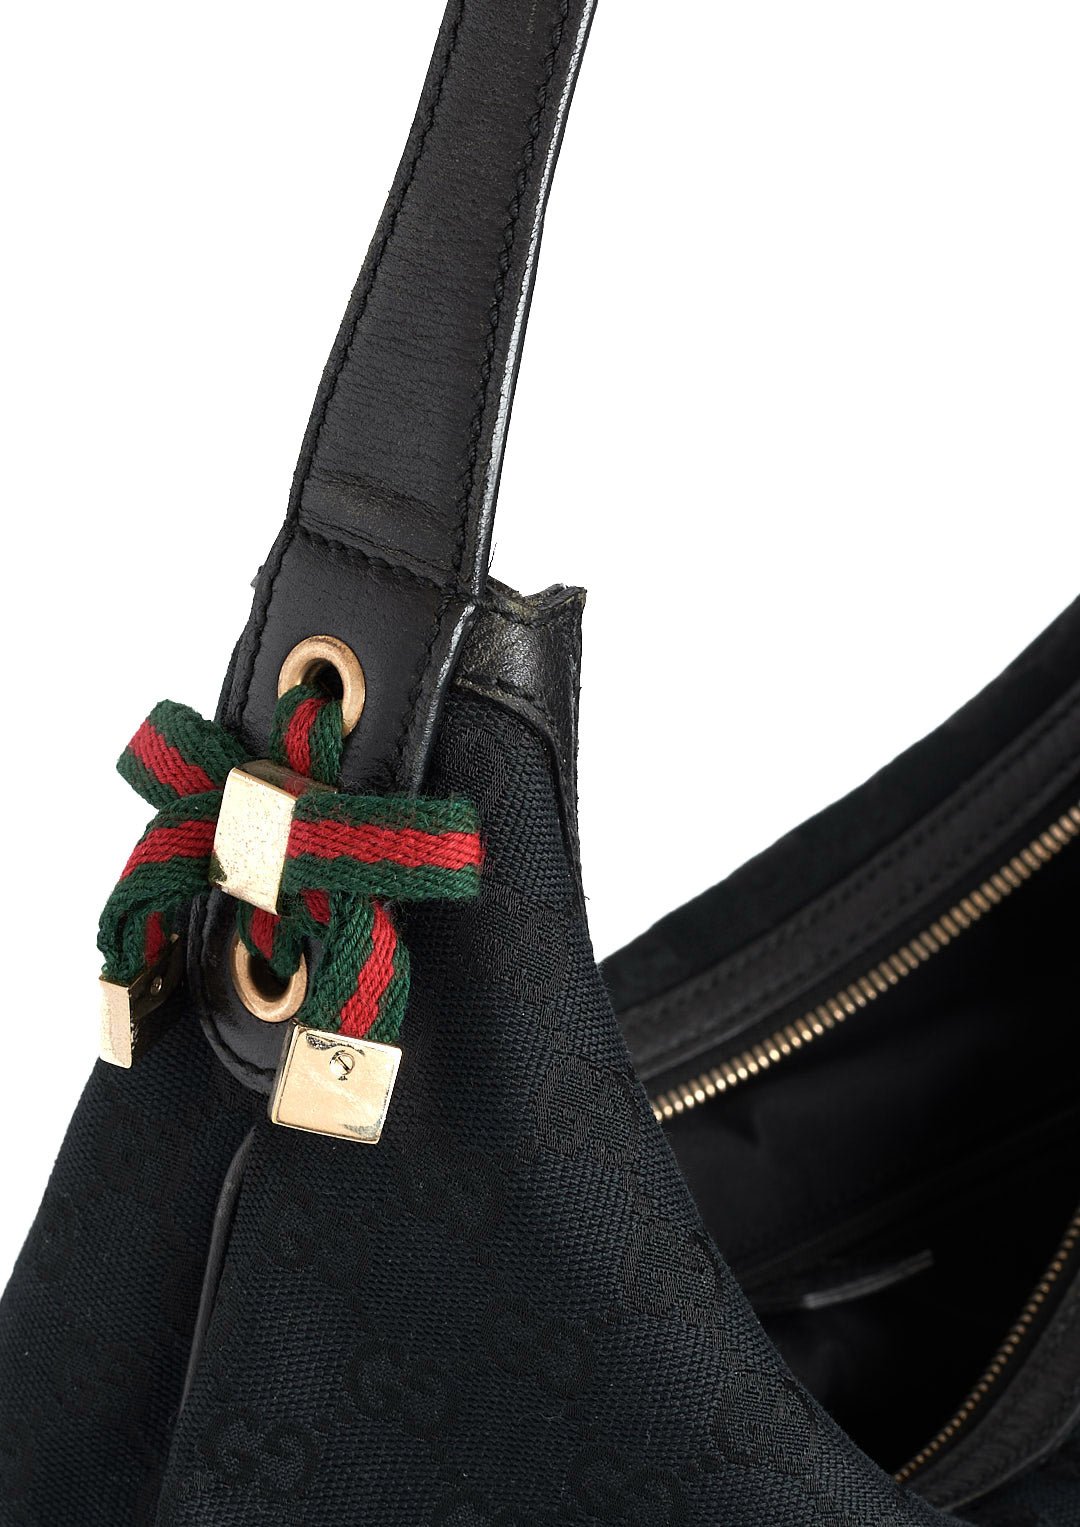 Gucci Princy Handbag - Parallel Luxury